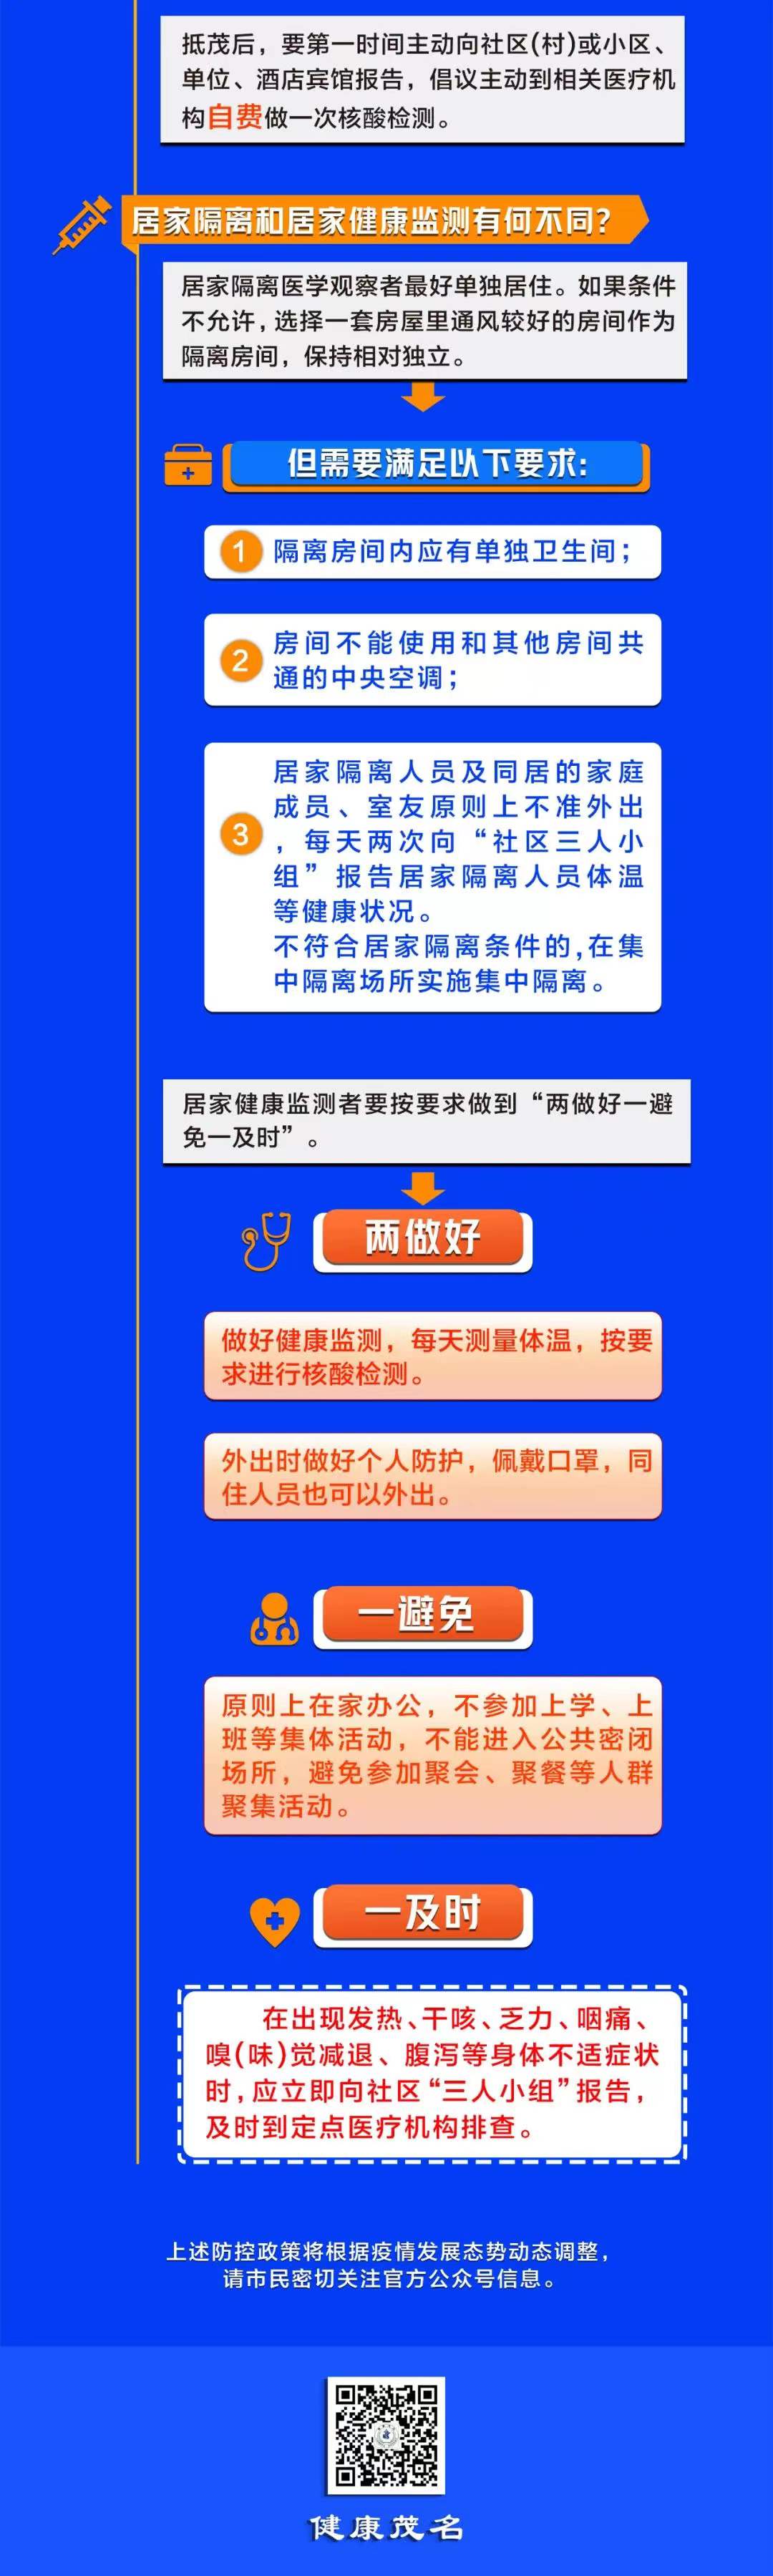 2022年春节期间从深圳、中山、珠海来（返）茂名地区的人员健康管理指引。 2